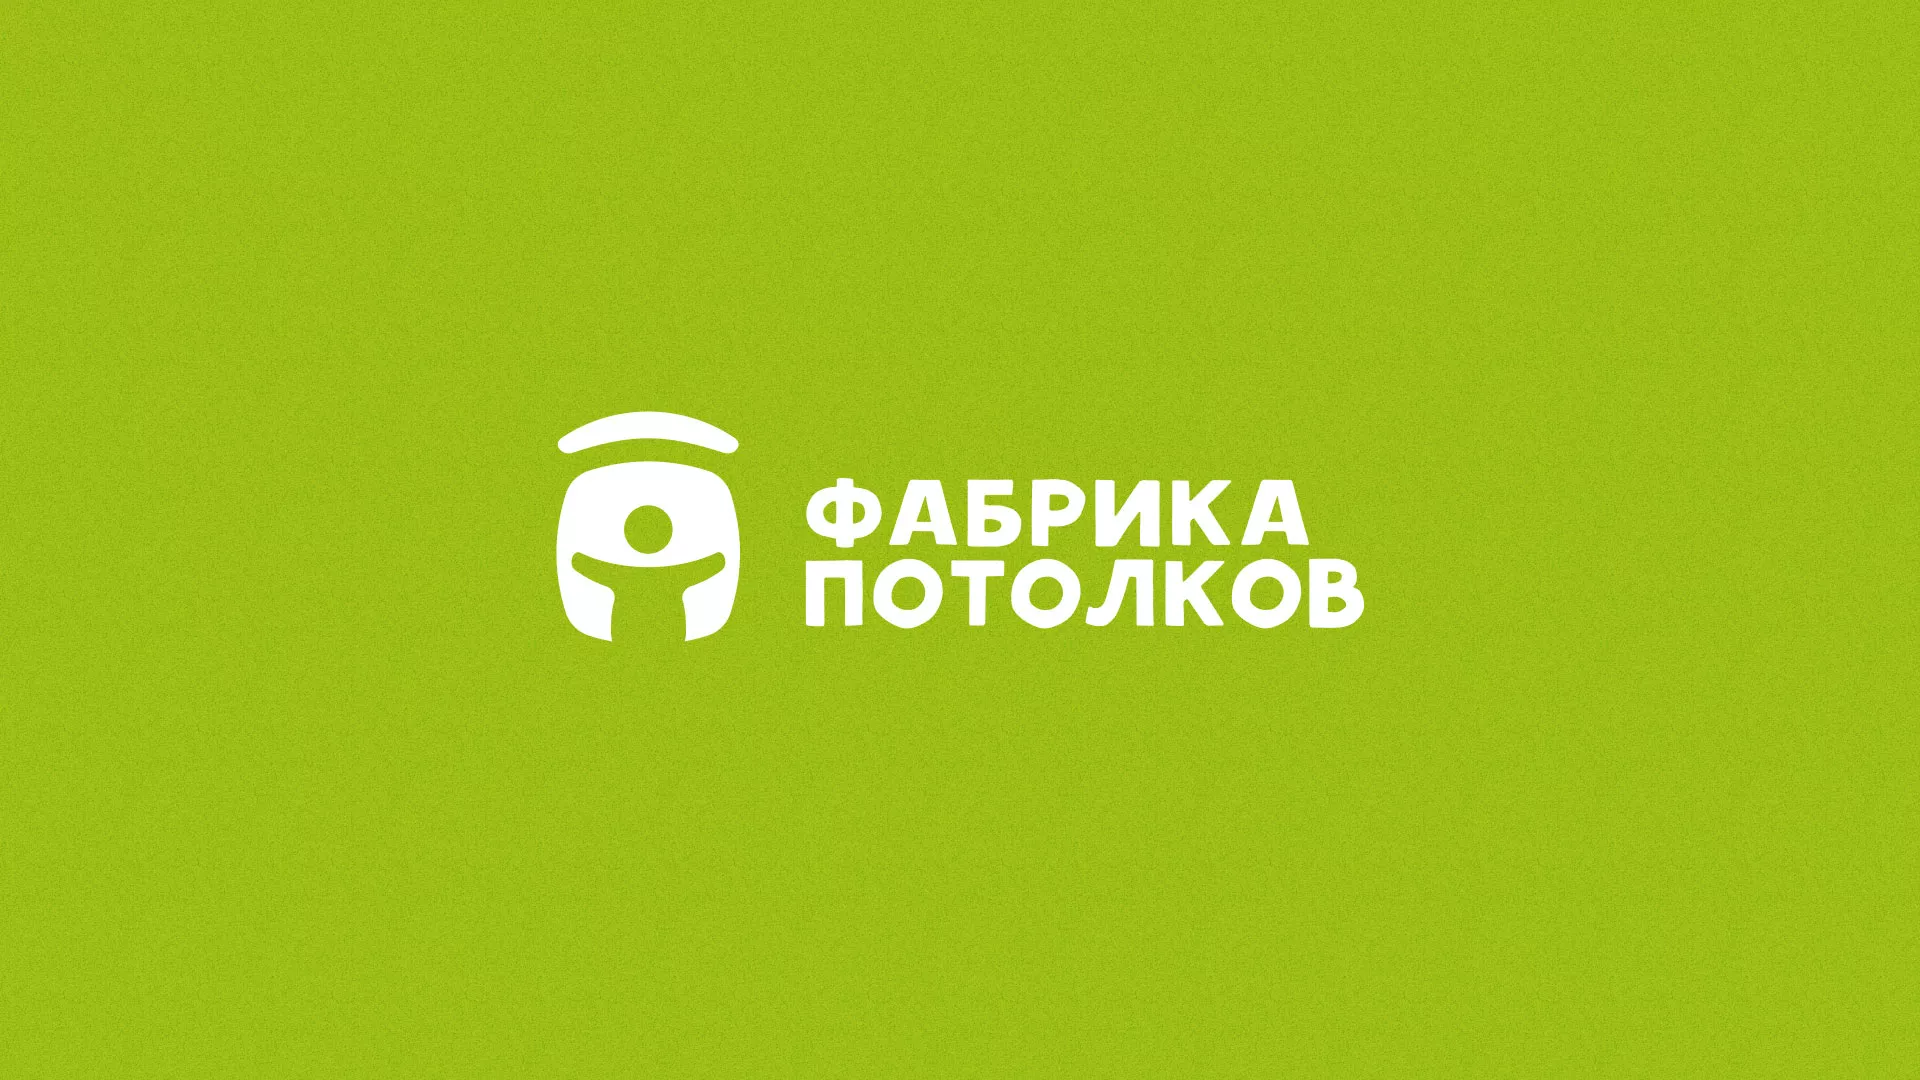 Разработка логотипа для производства натяжных потолков в Болохово